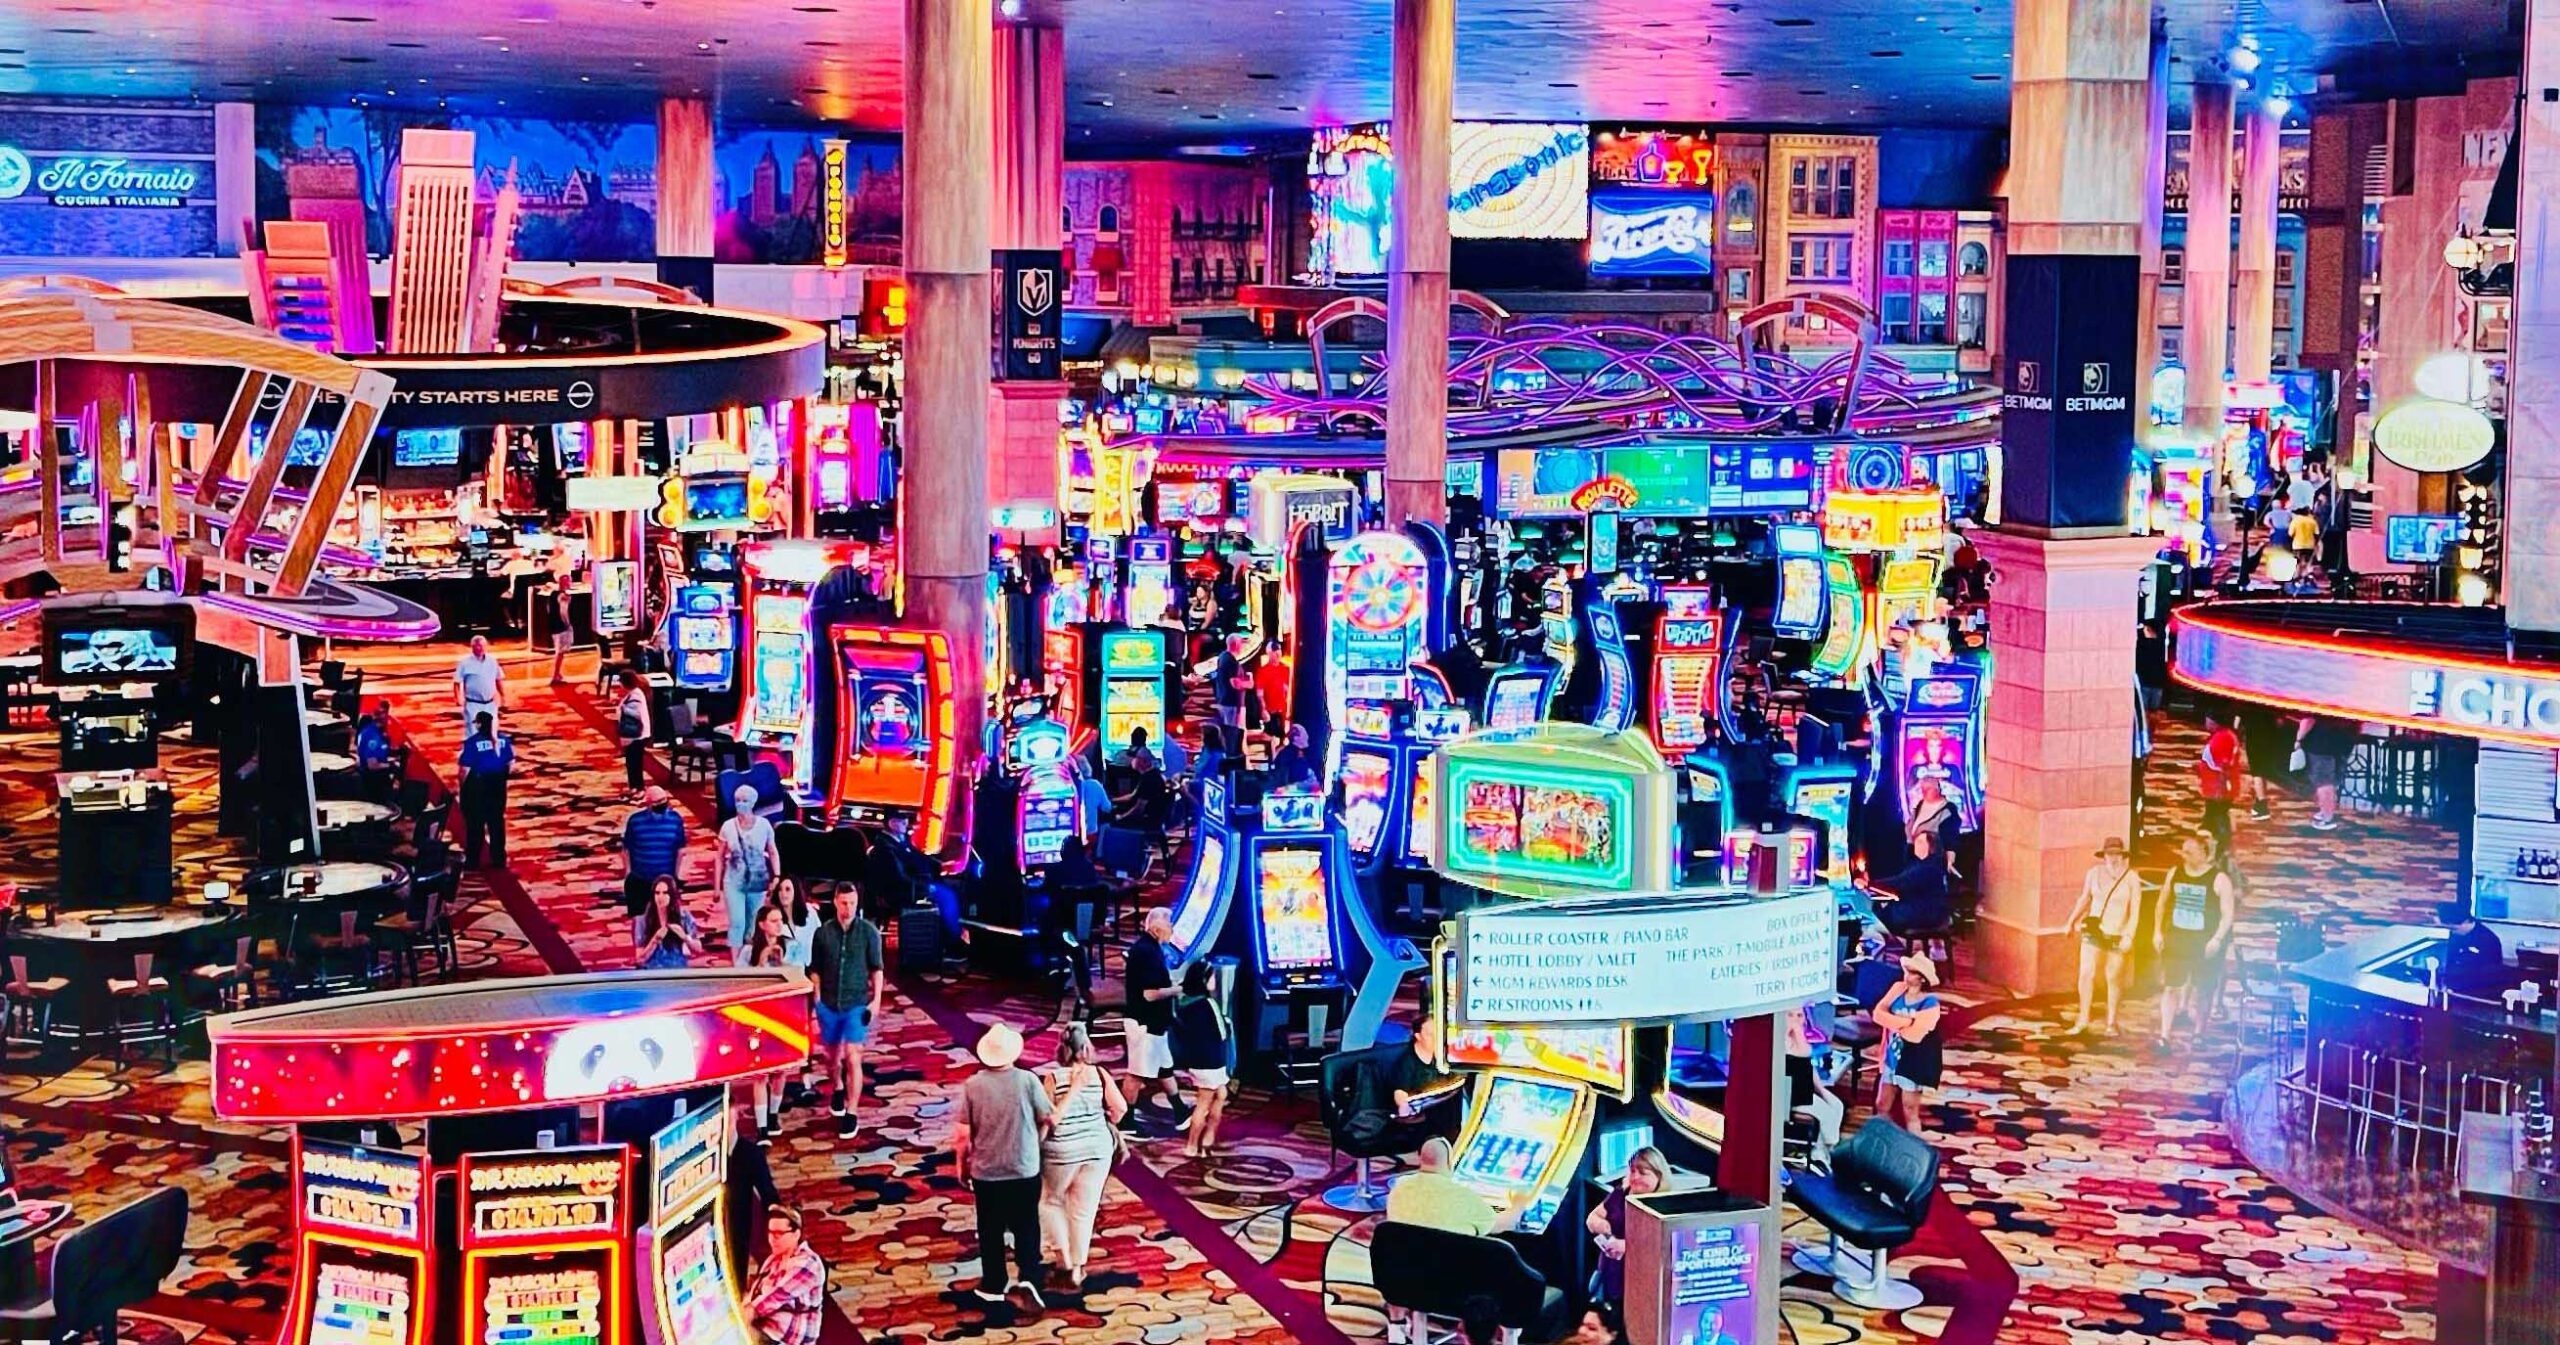 New York-New York Casino guide Las Vegas Gambling - a sea of slots